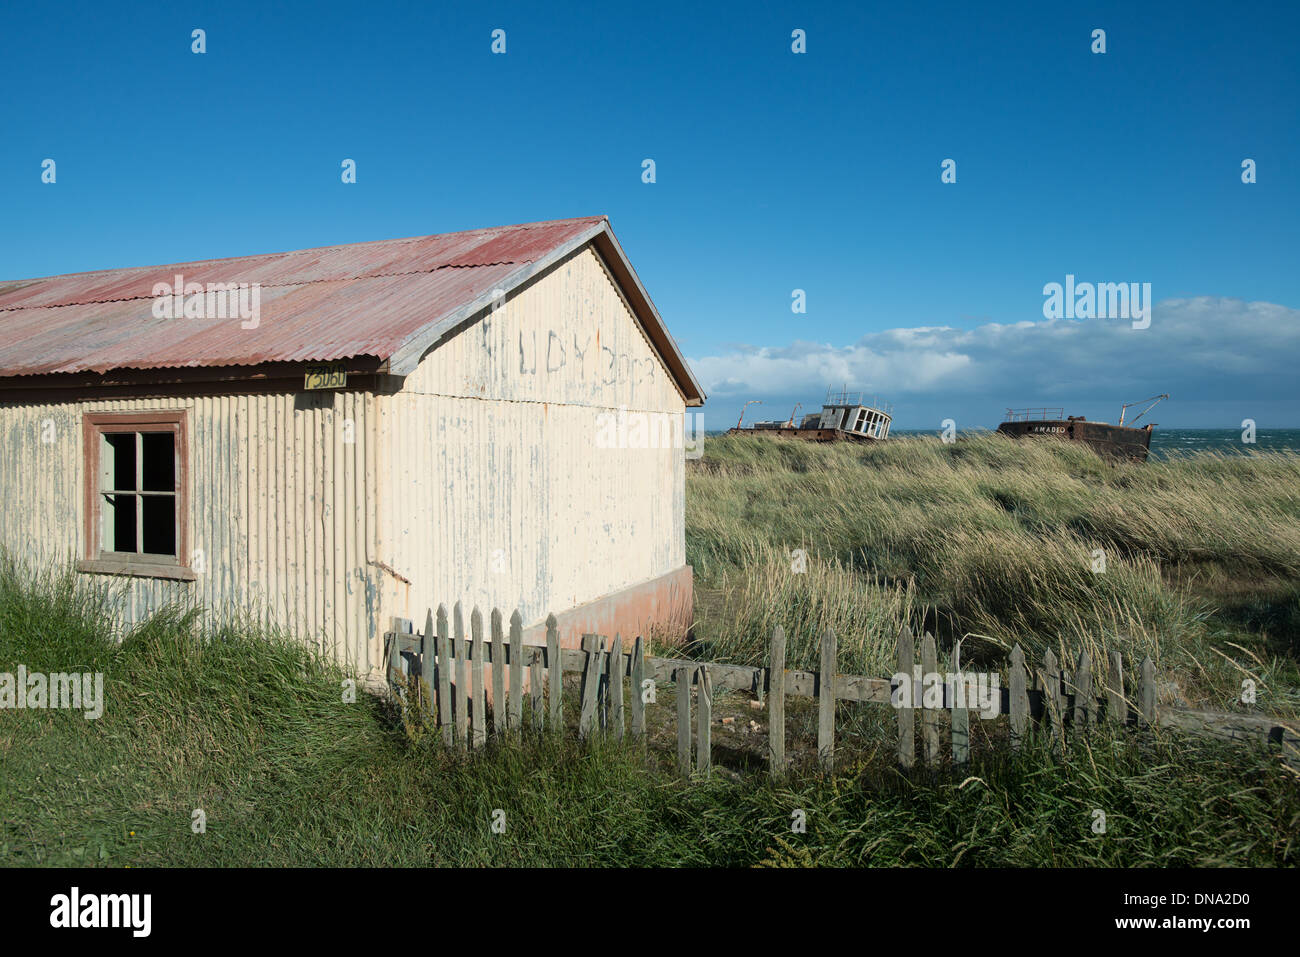 Vieille maison de ferme avec des navires et de l'océan en arrière-plan, San Gregorio, Chili Banque D'Images